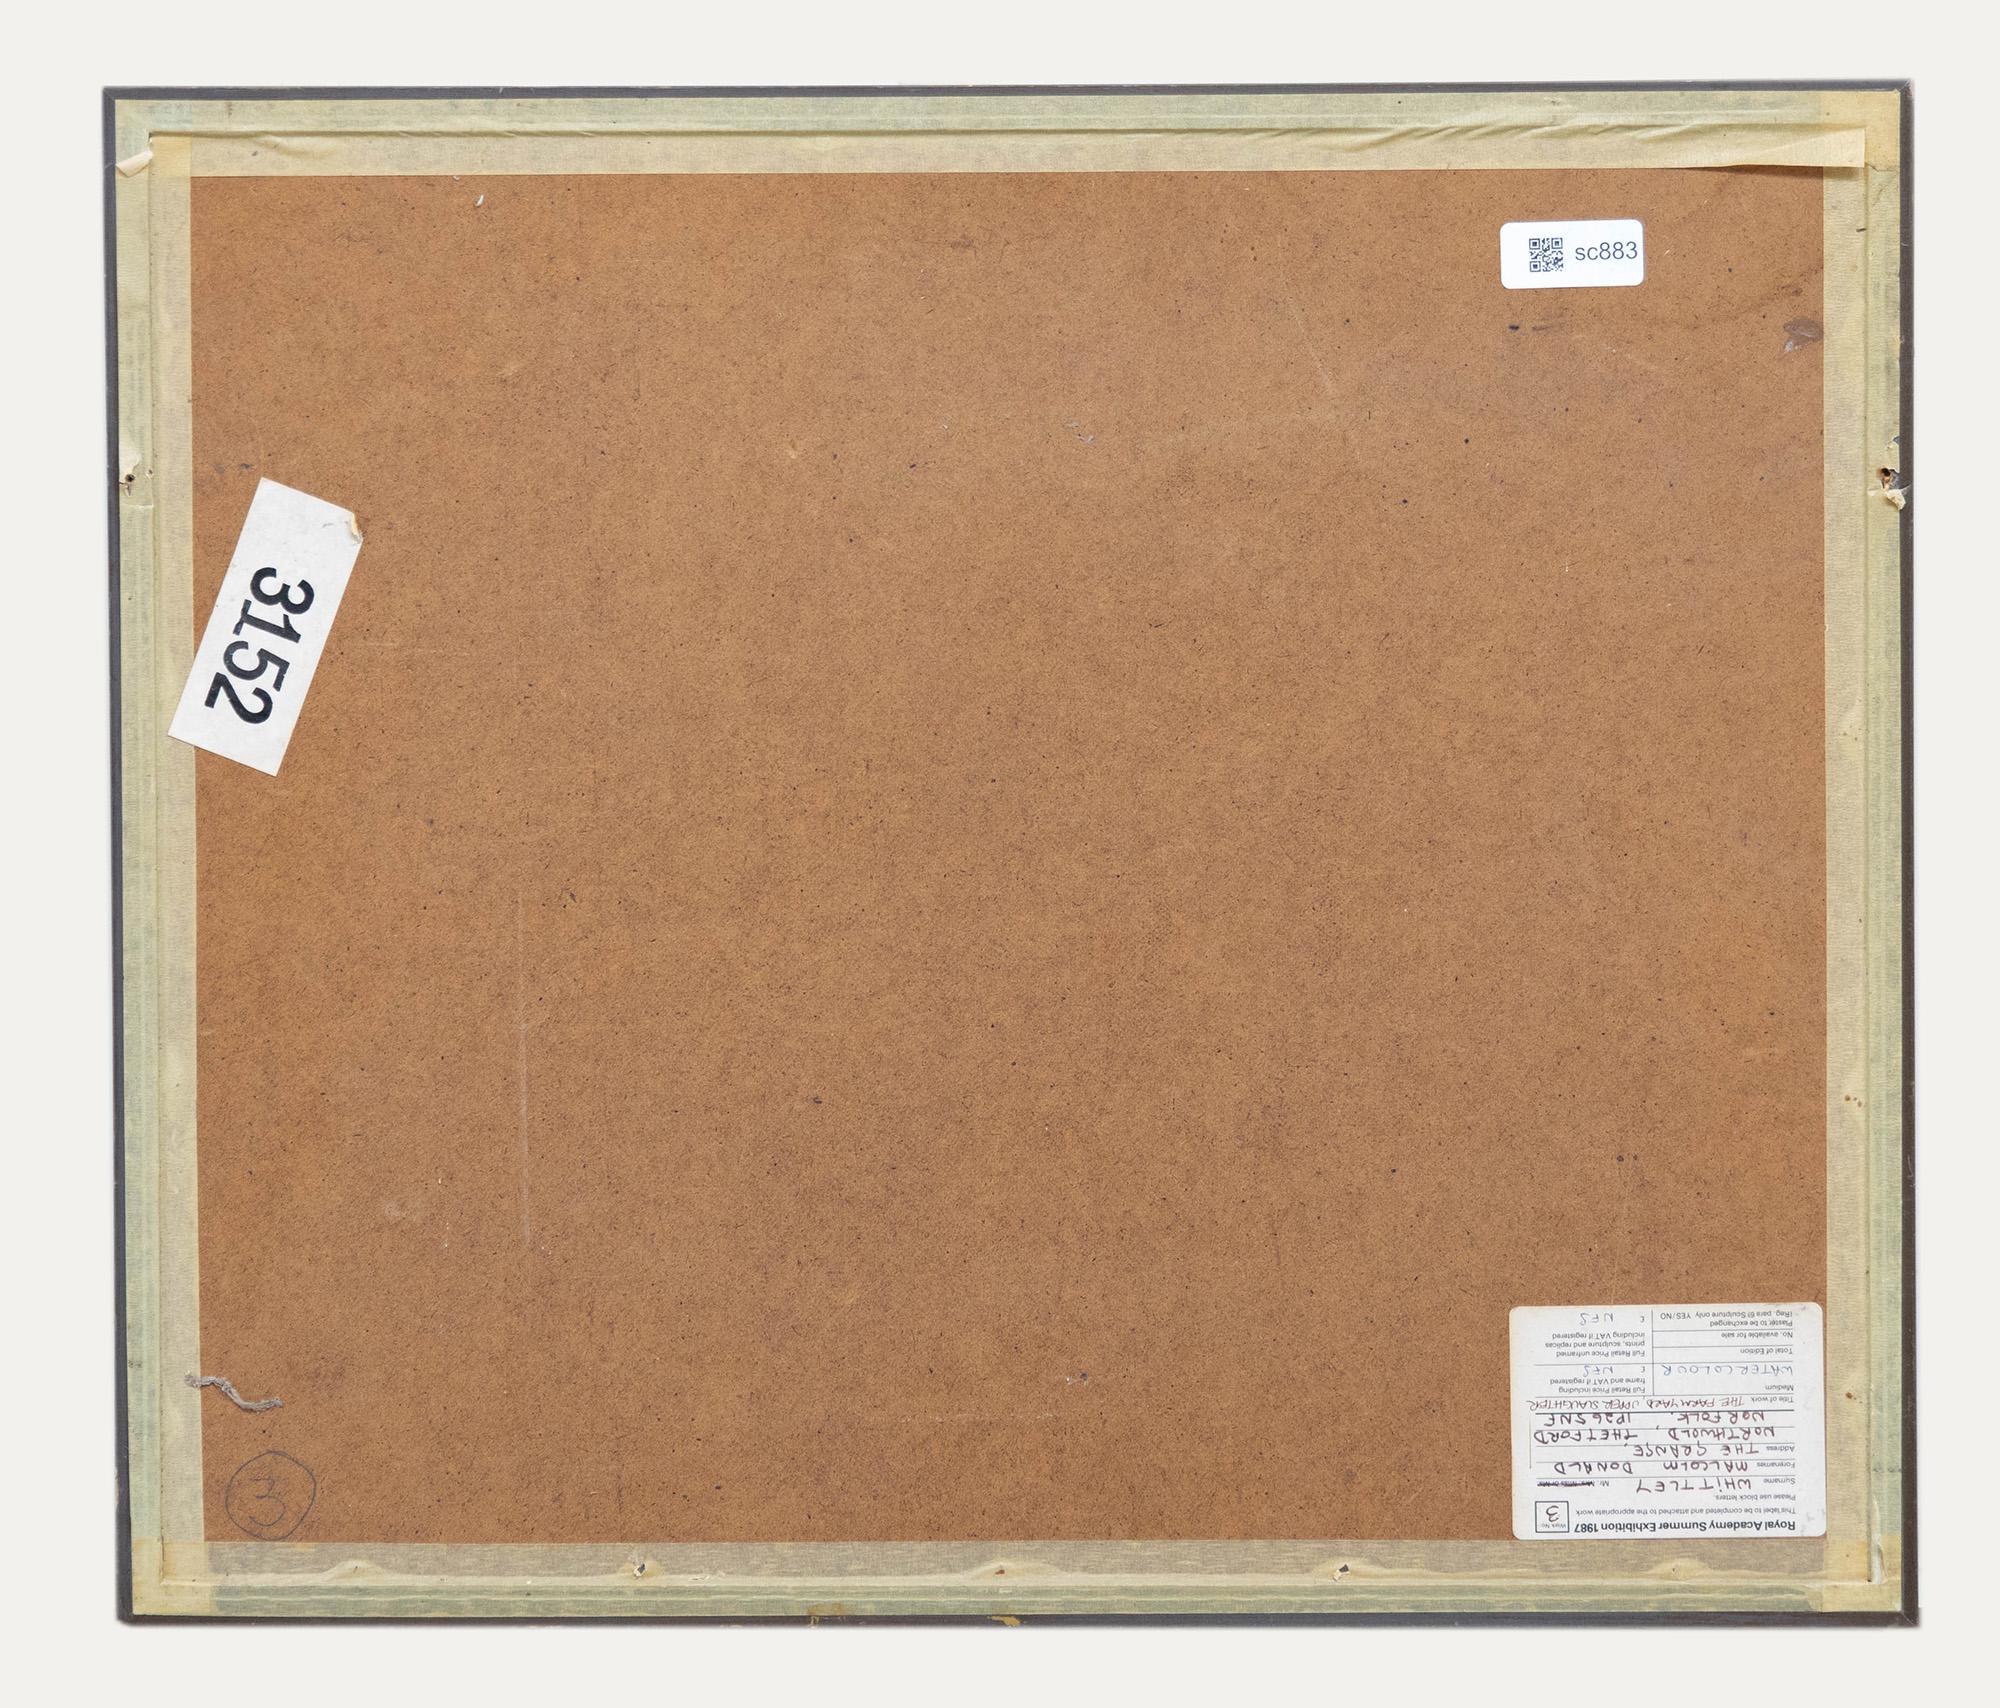 Signiert unten rechts. Präsentiert in einem modernen Rahmen mit violettem Passepartout. Verso mit einem Label der Royal Academy Summer Exhibition. Auf dem Papier.
